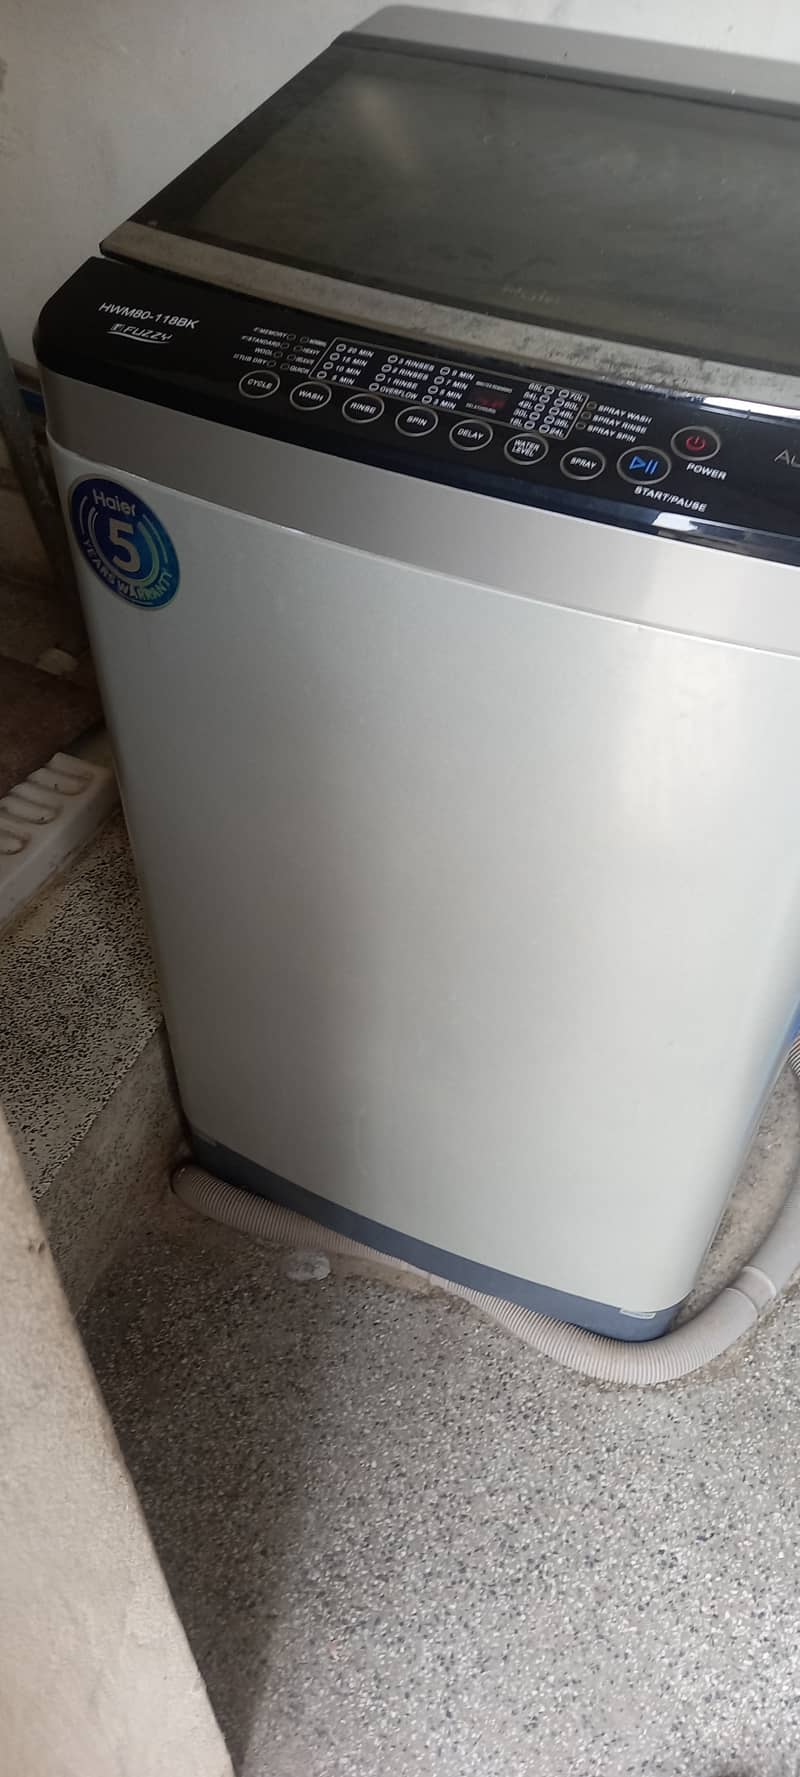 Full automatic washing machine 2